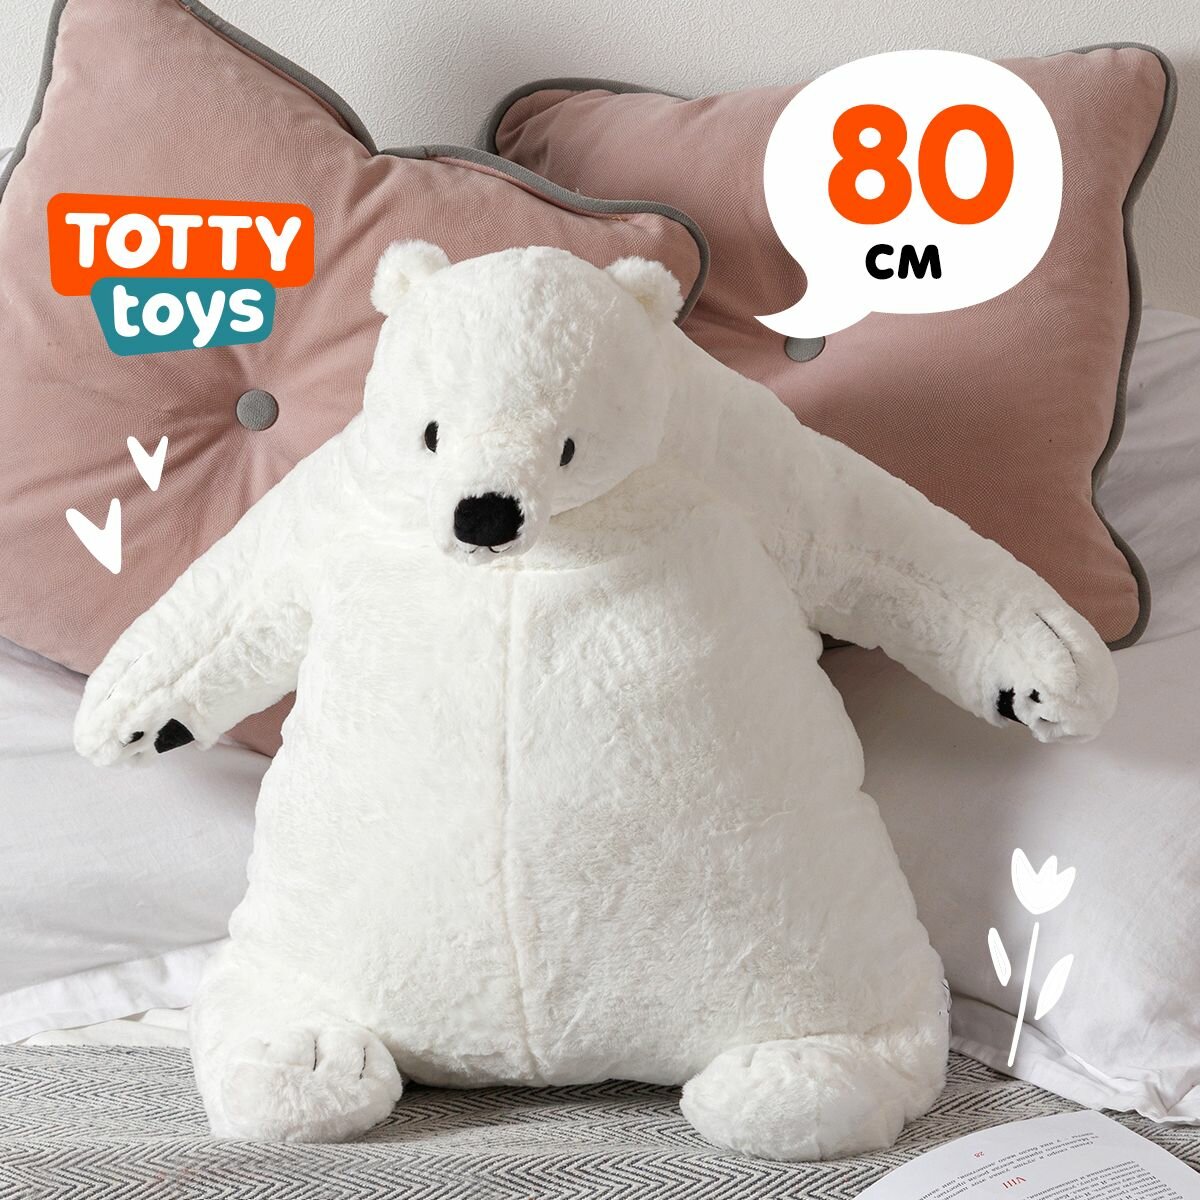 Мягкая игрушка Totty toys медведь икеа, белый, 80 см